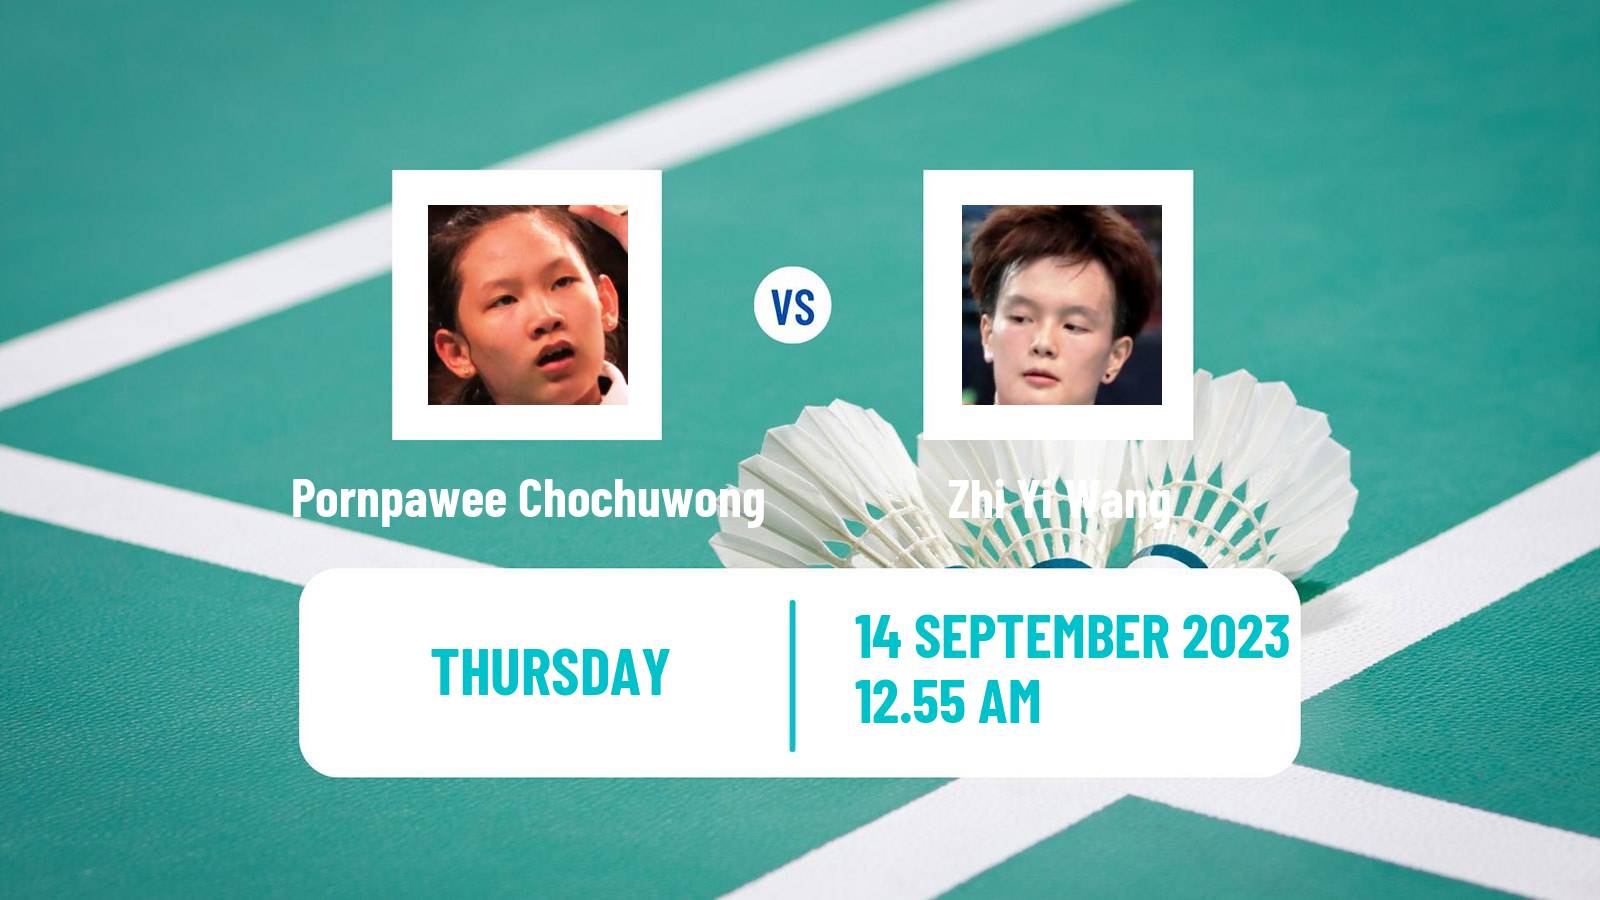 Badminton BWF World Tour Hong Kong Open Women Pornpawee Chochuwong - Zhi Yi Wang